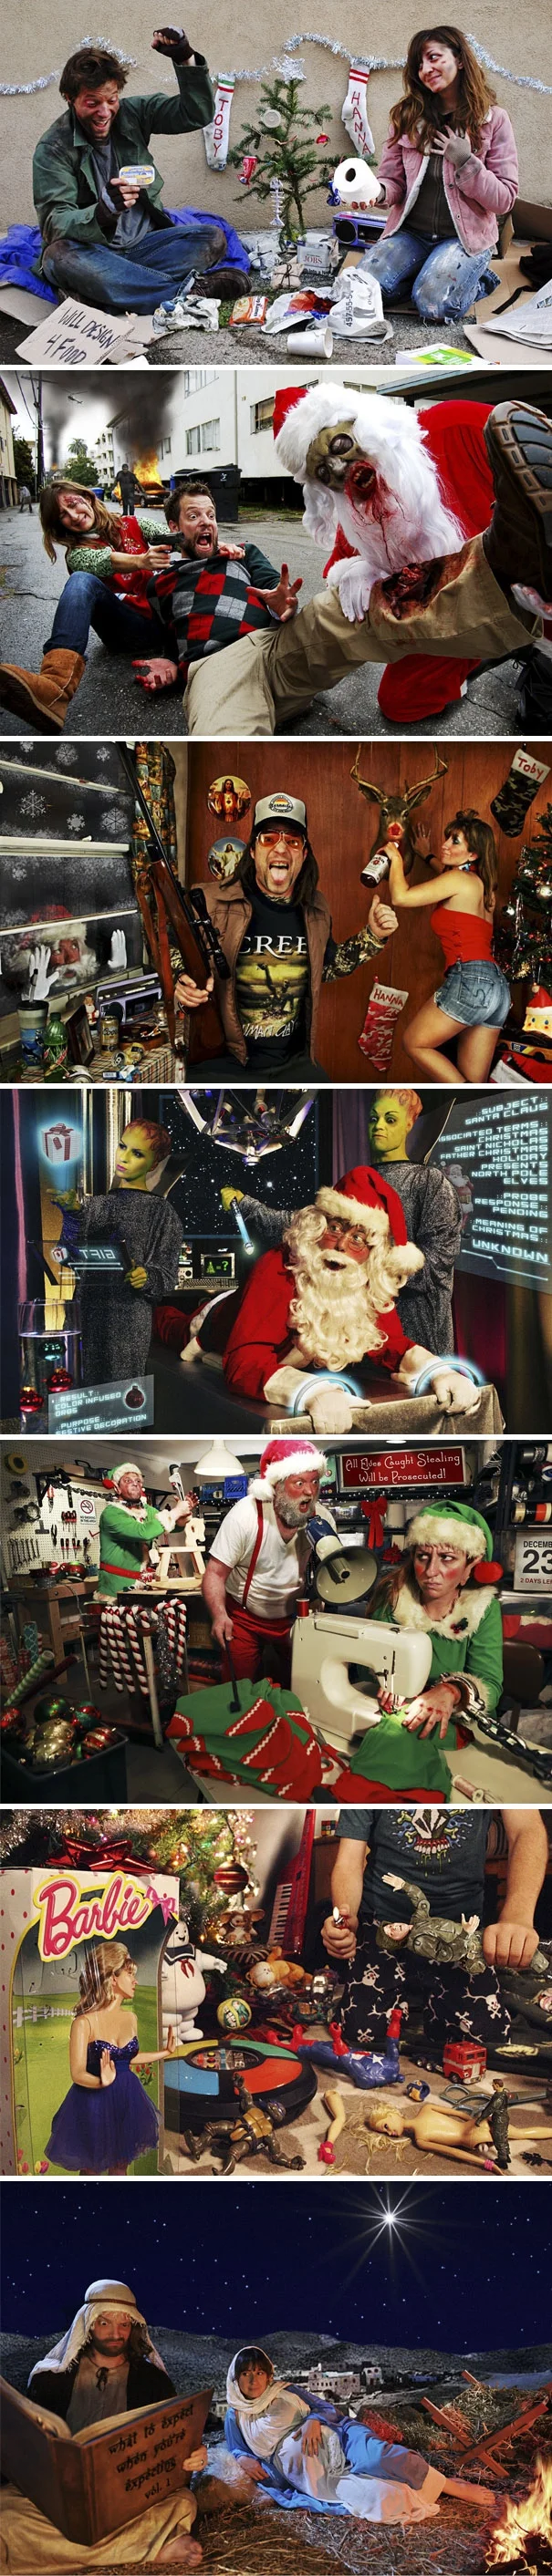 Ці дурнуваті різдвяні листівки змусять тебе сміятися від душі - фото 358148